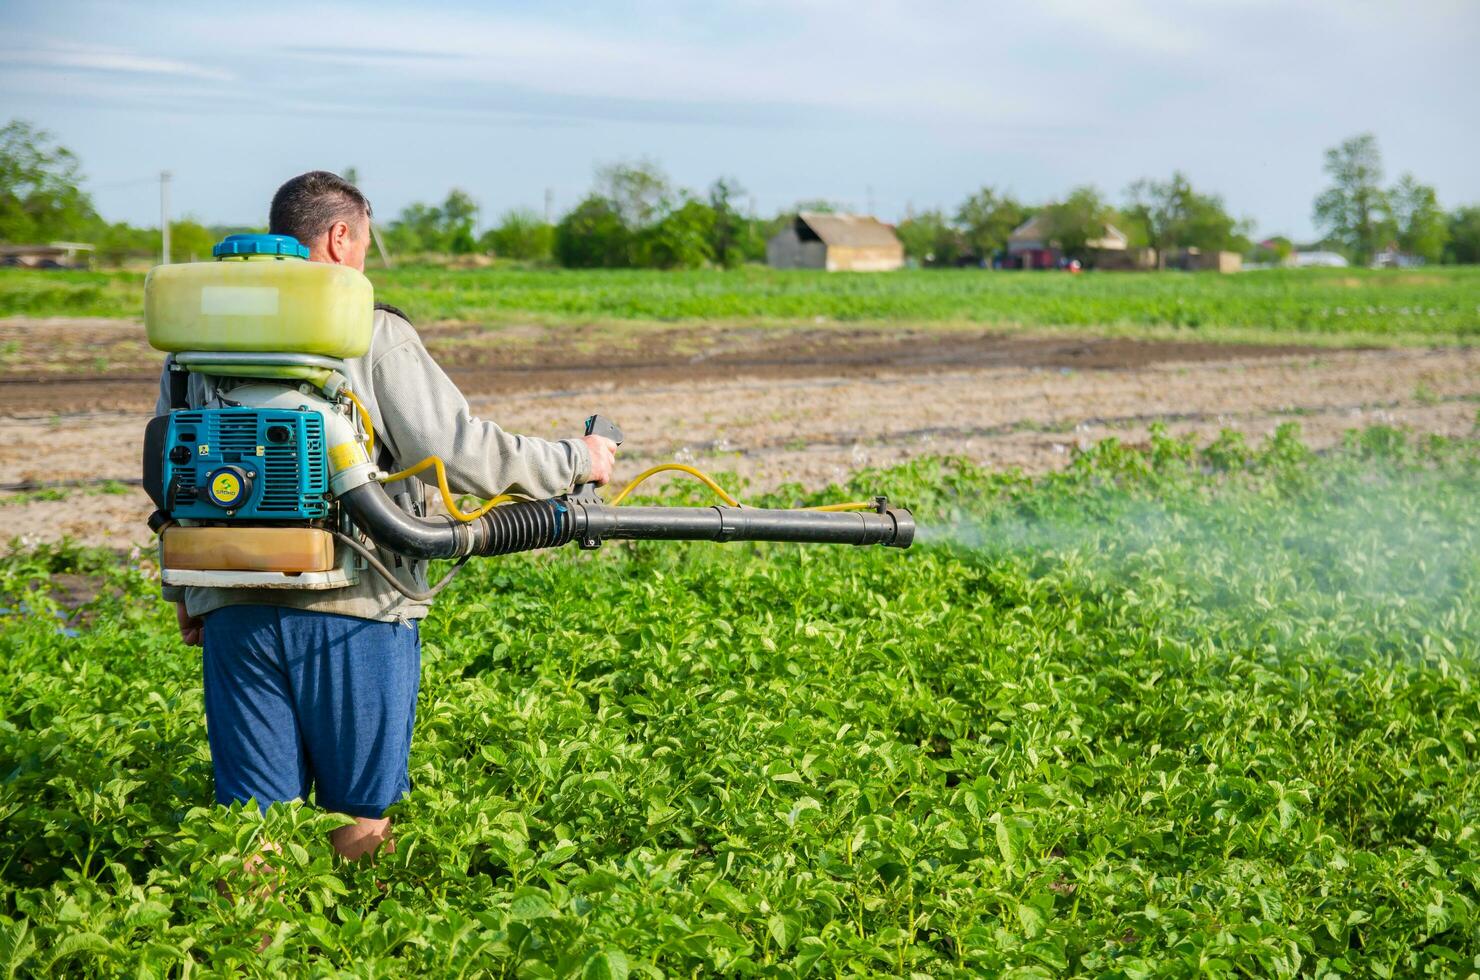 kherson oblast, ukraina - Maj 22, 2021 jordbrukare sprayer en potatis plantage med en spruta. dimma spruta, fungicid och pesticid. beskära skydd av kultiverad växter mot insekter och svamp. foto